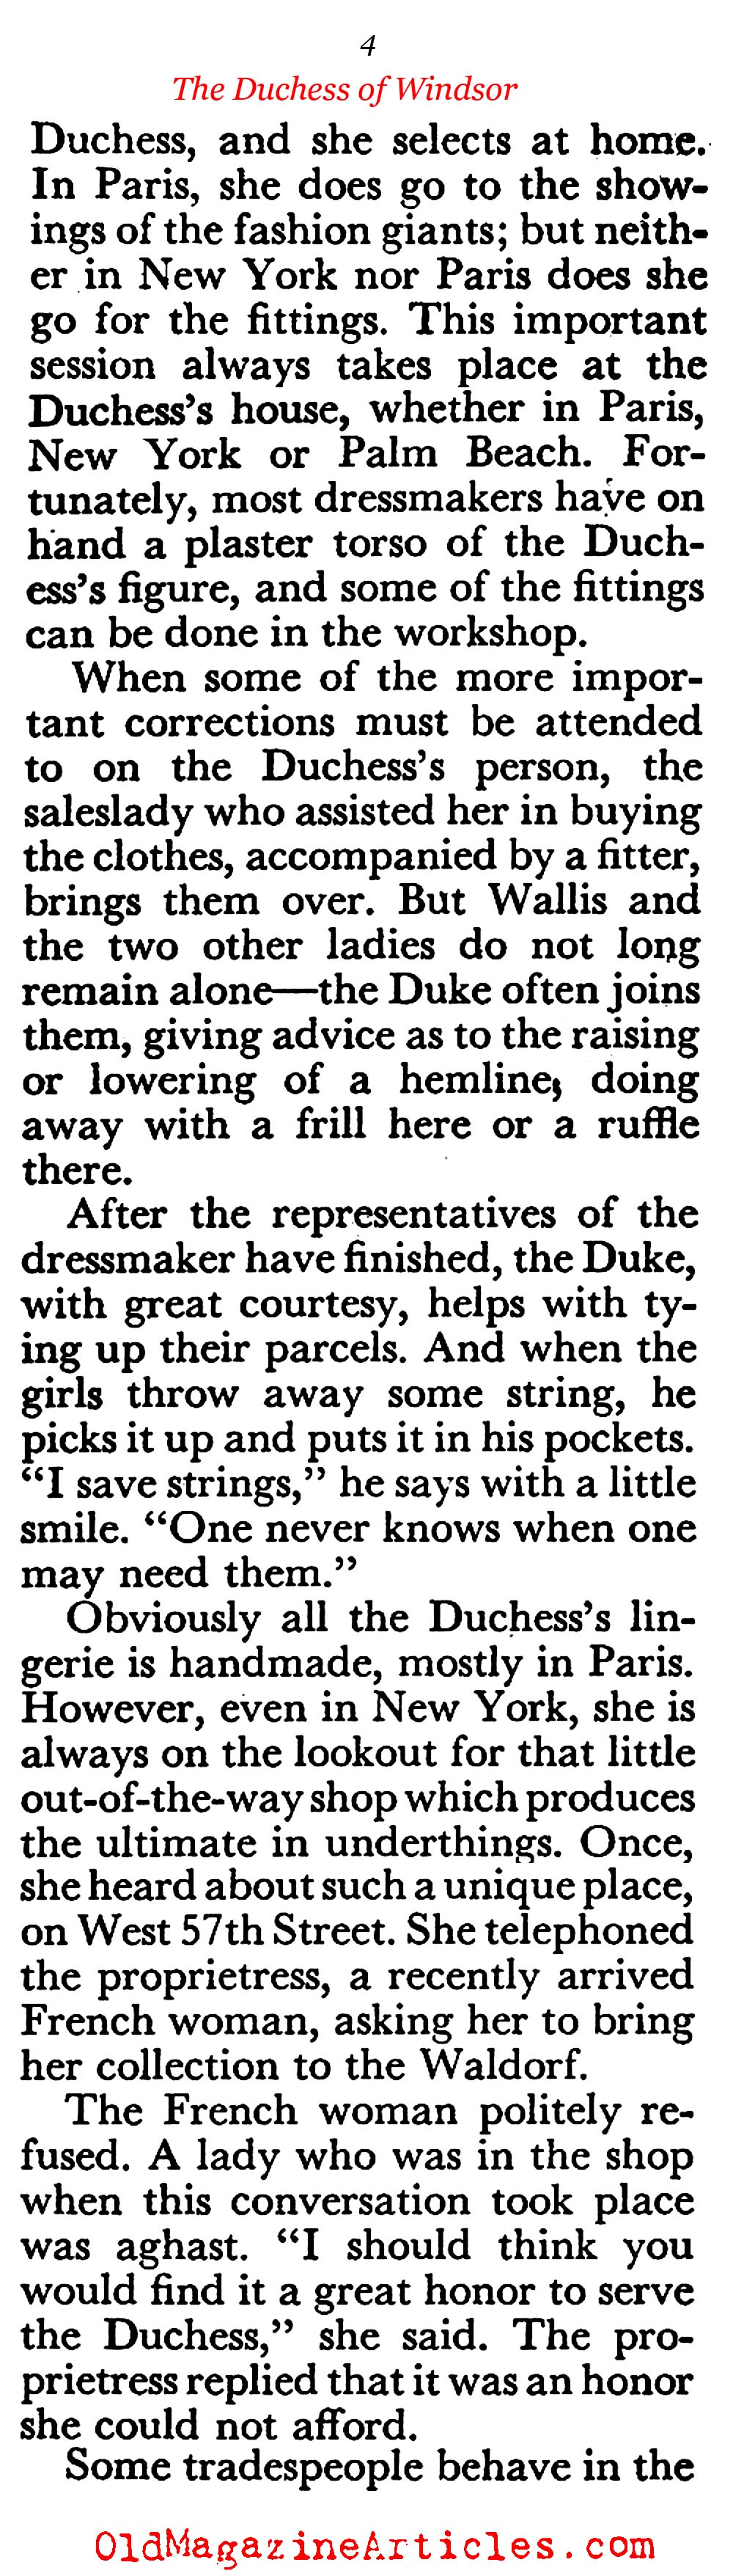 The Duchess (Coronet Magazine, 1953)